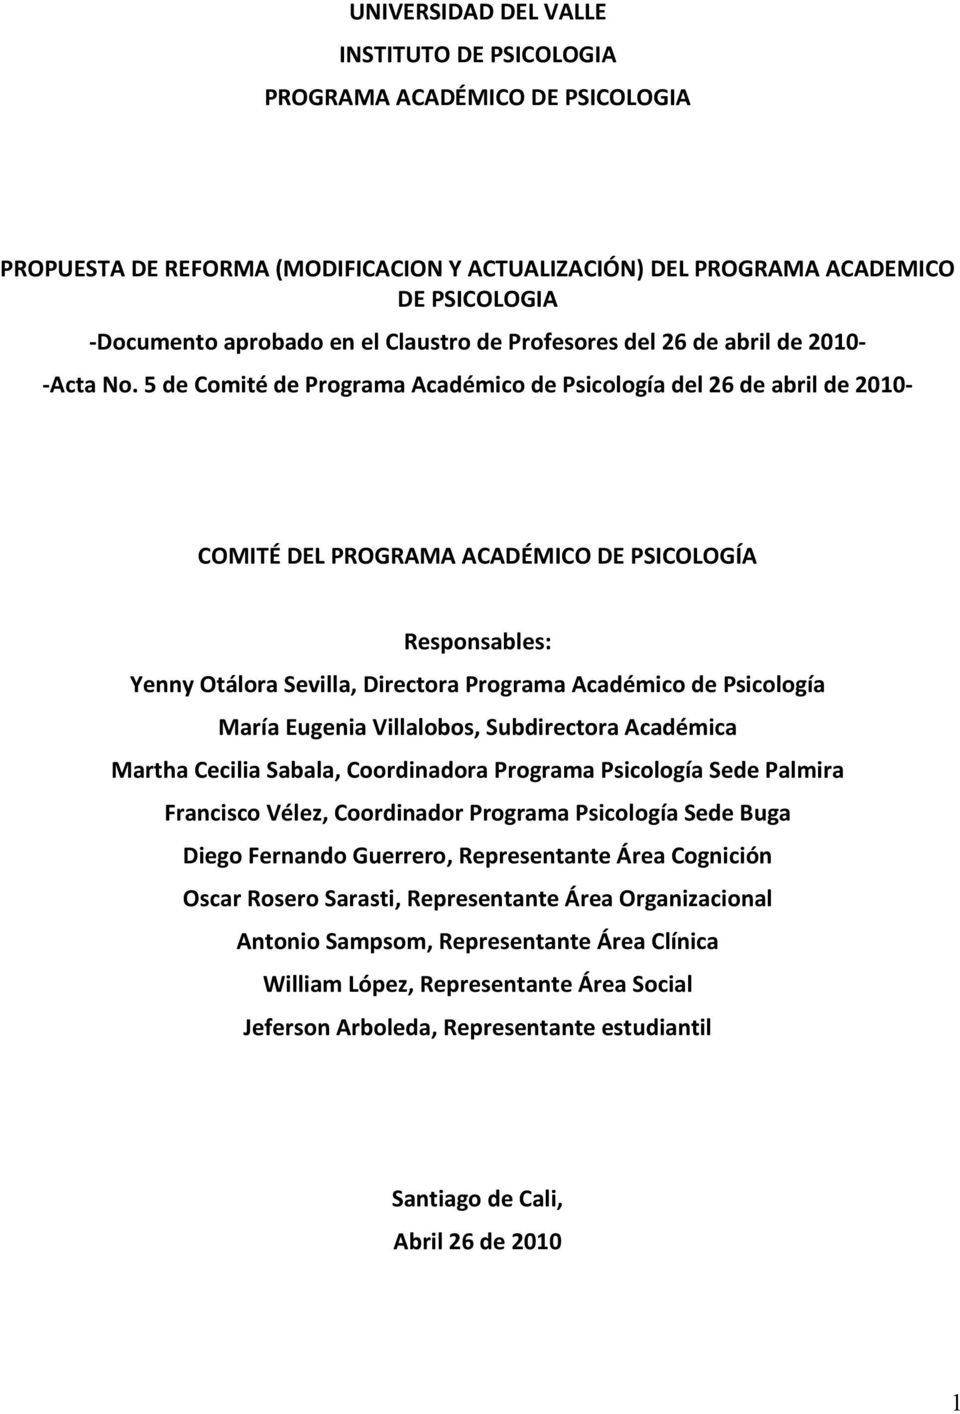 5 de Comité de Programa Académico de Psicología del 26 de abril de 2010- COMITÉ DEL PROGRAMA ACADÉMICO DE PSICOLOGÍA Responsables: Yenny Otálora Sevilla, Directora Programa Académico de Psicología